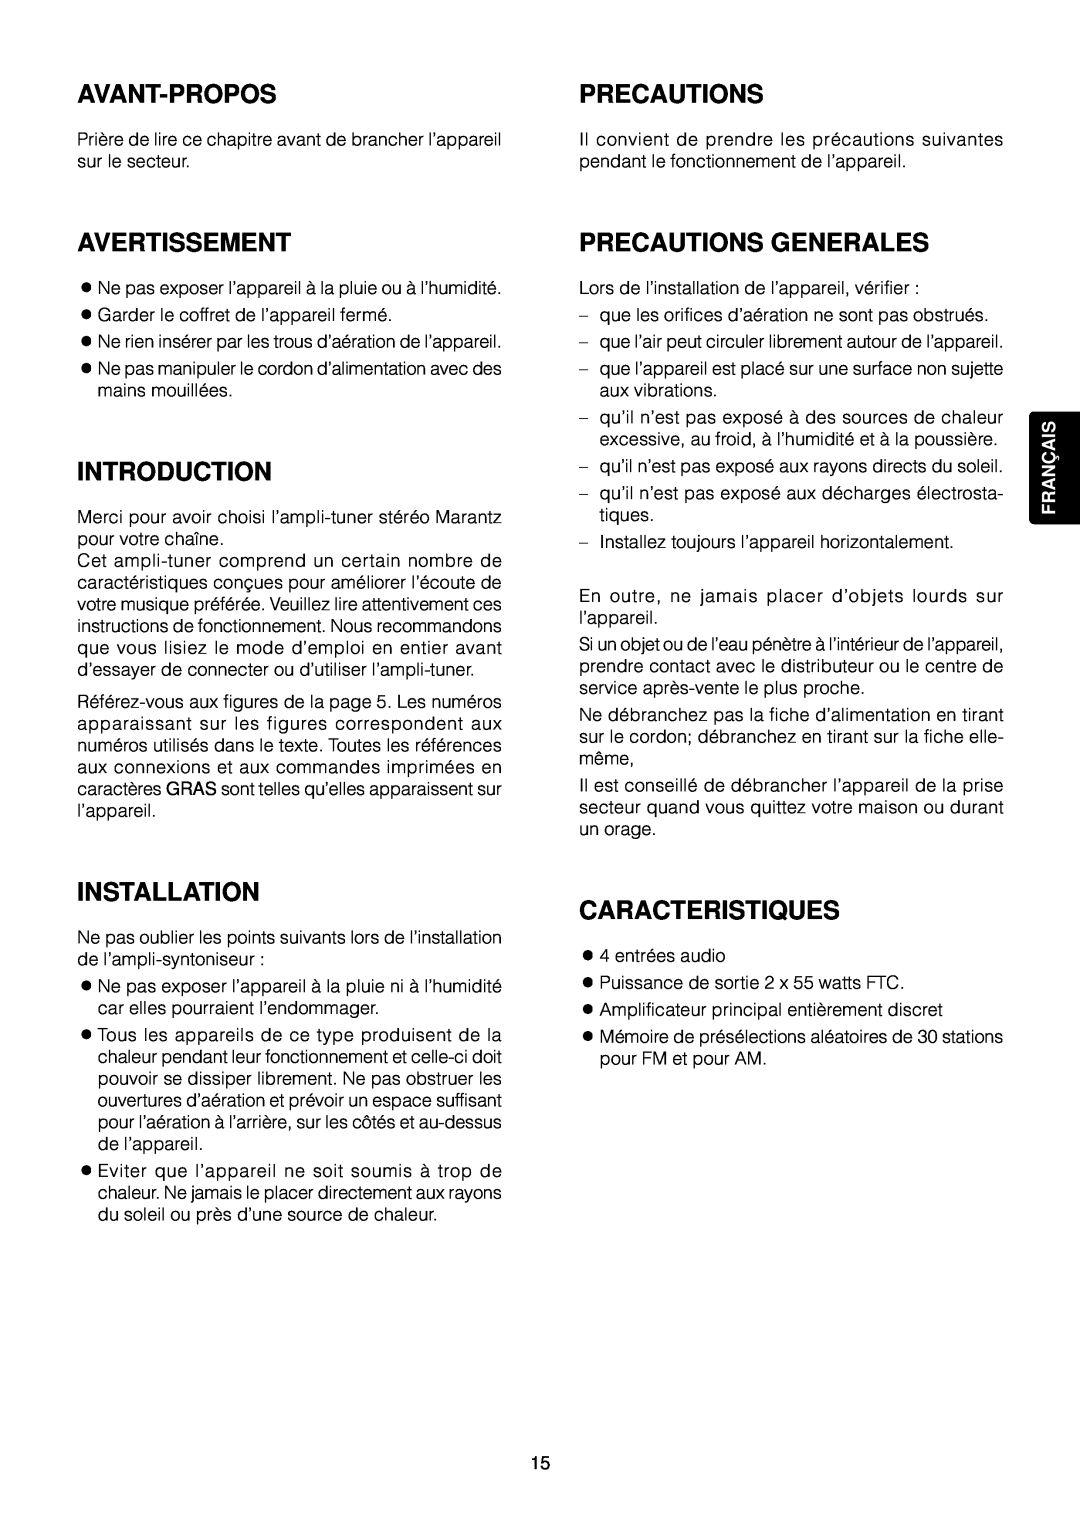 Marantz SR4120 Avant-Propos, Avertissement, Precautions Generales, Caracteristiques, Introduction, Installation, Franç Ais 